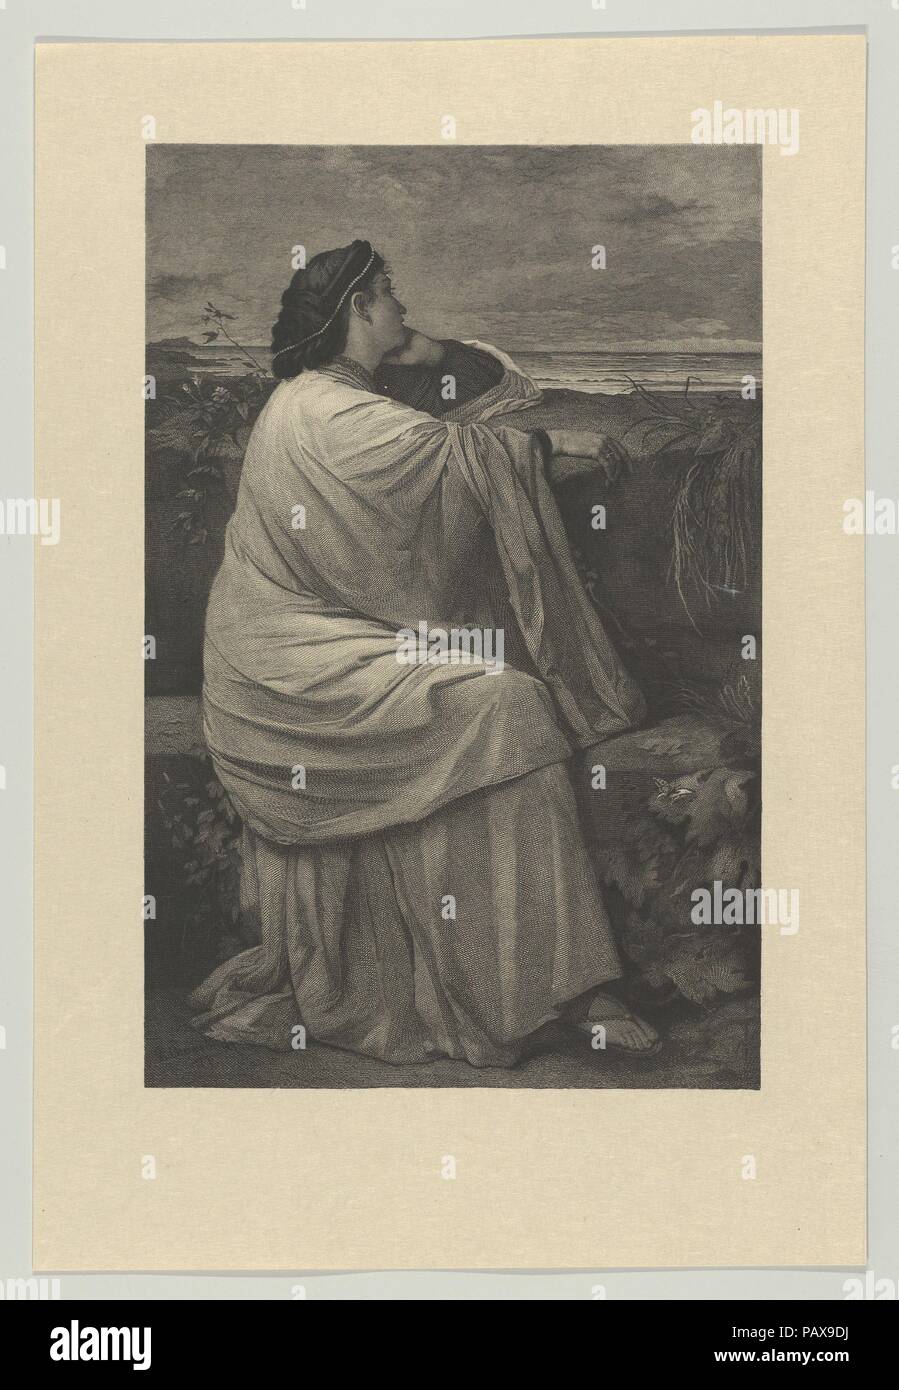 Iphigénie. Artiste : Karl August Kräutle (allemand, Schramberg, 1833-1912) ; Stuttgart Après Anselm Feuerbach (allemand, Speyer 1829-1880 Venise). Dimensions : Image : 9 × 6 5/16 1/8 in. (23,7 × 15,5 cm) feuille : 12 1/4 x 8 5/16 in. (31,1 × 21,1 cm). Date : 1872. Cette impression a été réalisée à l'occasion de l'acquisition d'une peinture de Feuerbach de la Staatsgalerie de Stuttgart en 1872. Légende grecque records comment la déesse Artémis sauvé la princesse Iphigénie à partir de la mort sacrificielle de la part de son père Agamemnon, puis transportés à l'île du taureau pour devenir une prêtresse. Le leader allemand neoclassica Banque D'Images